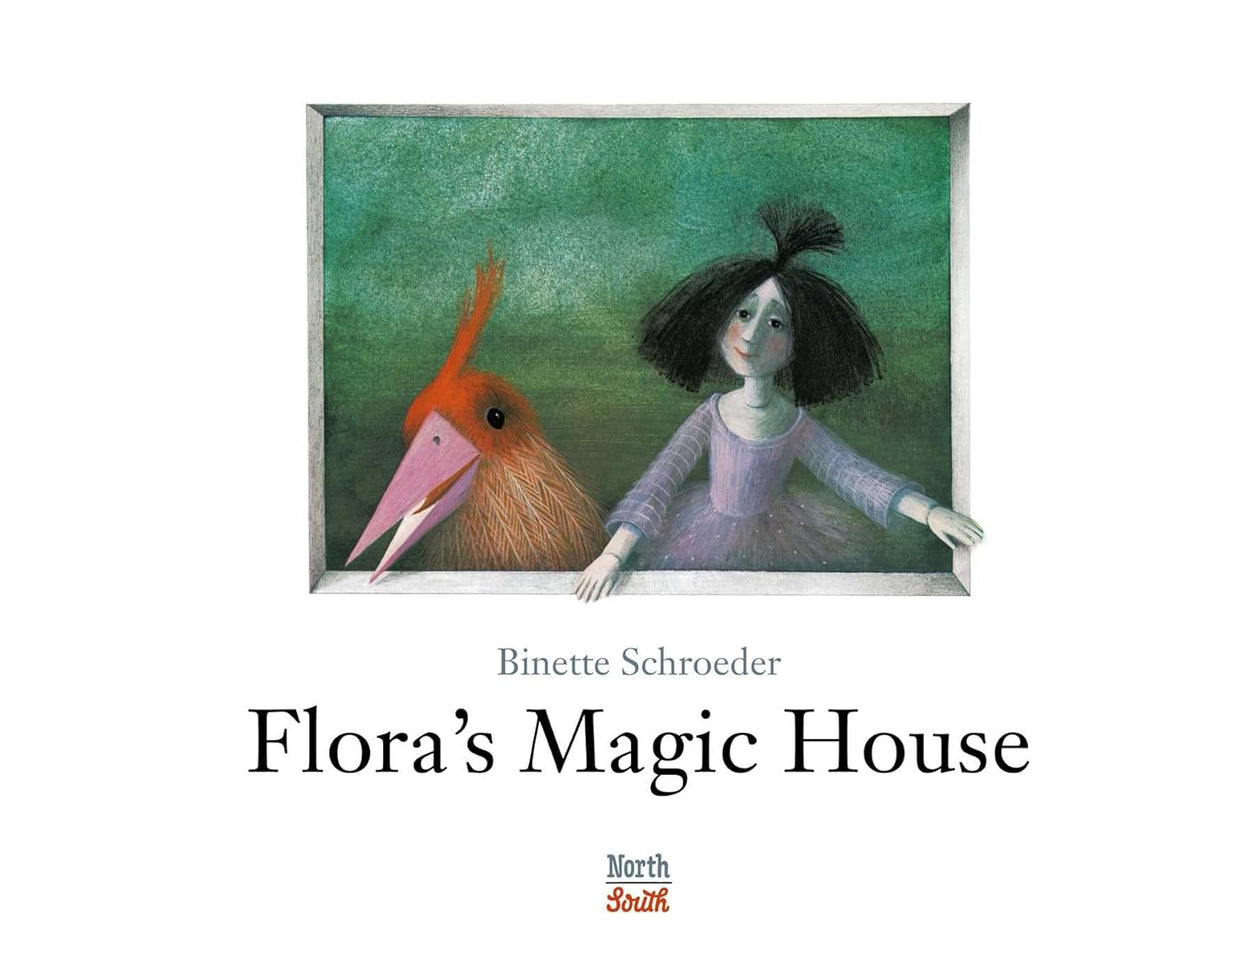 Binette Schroeder: Flora's Magic House